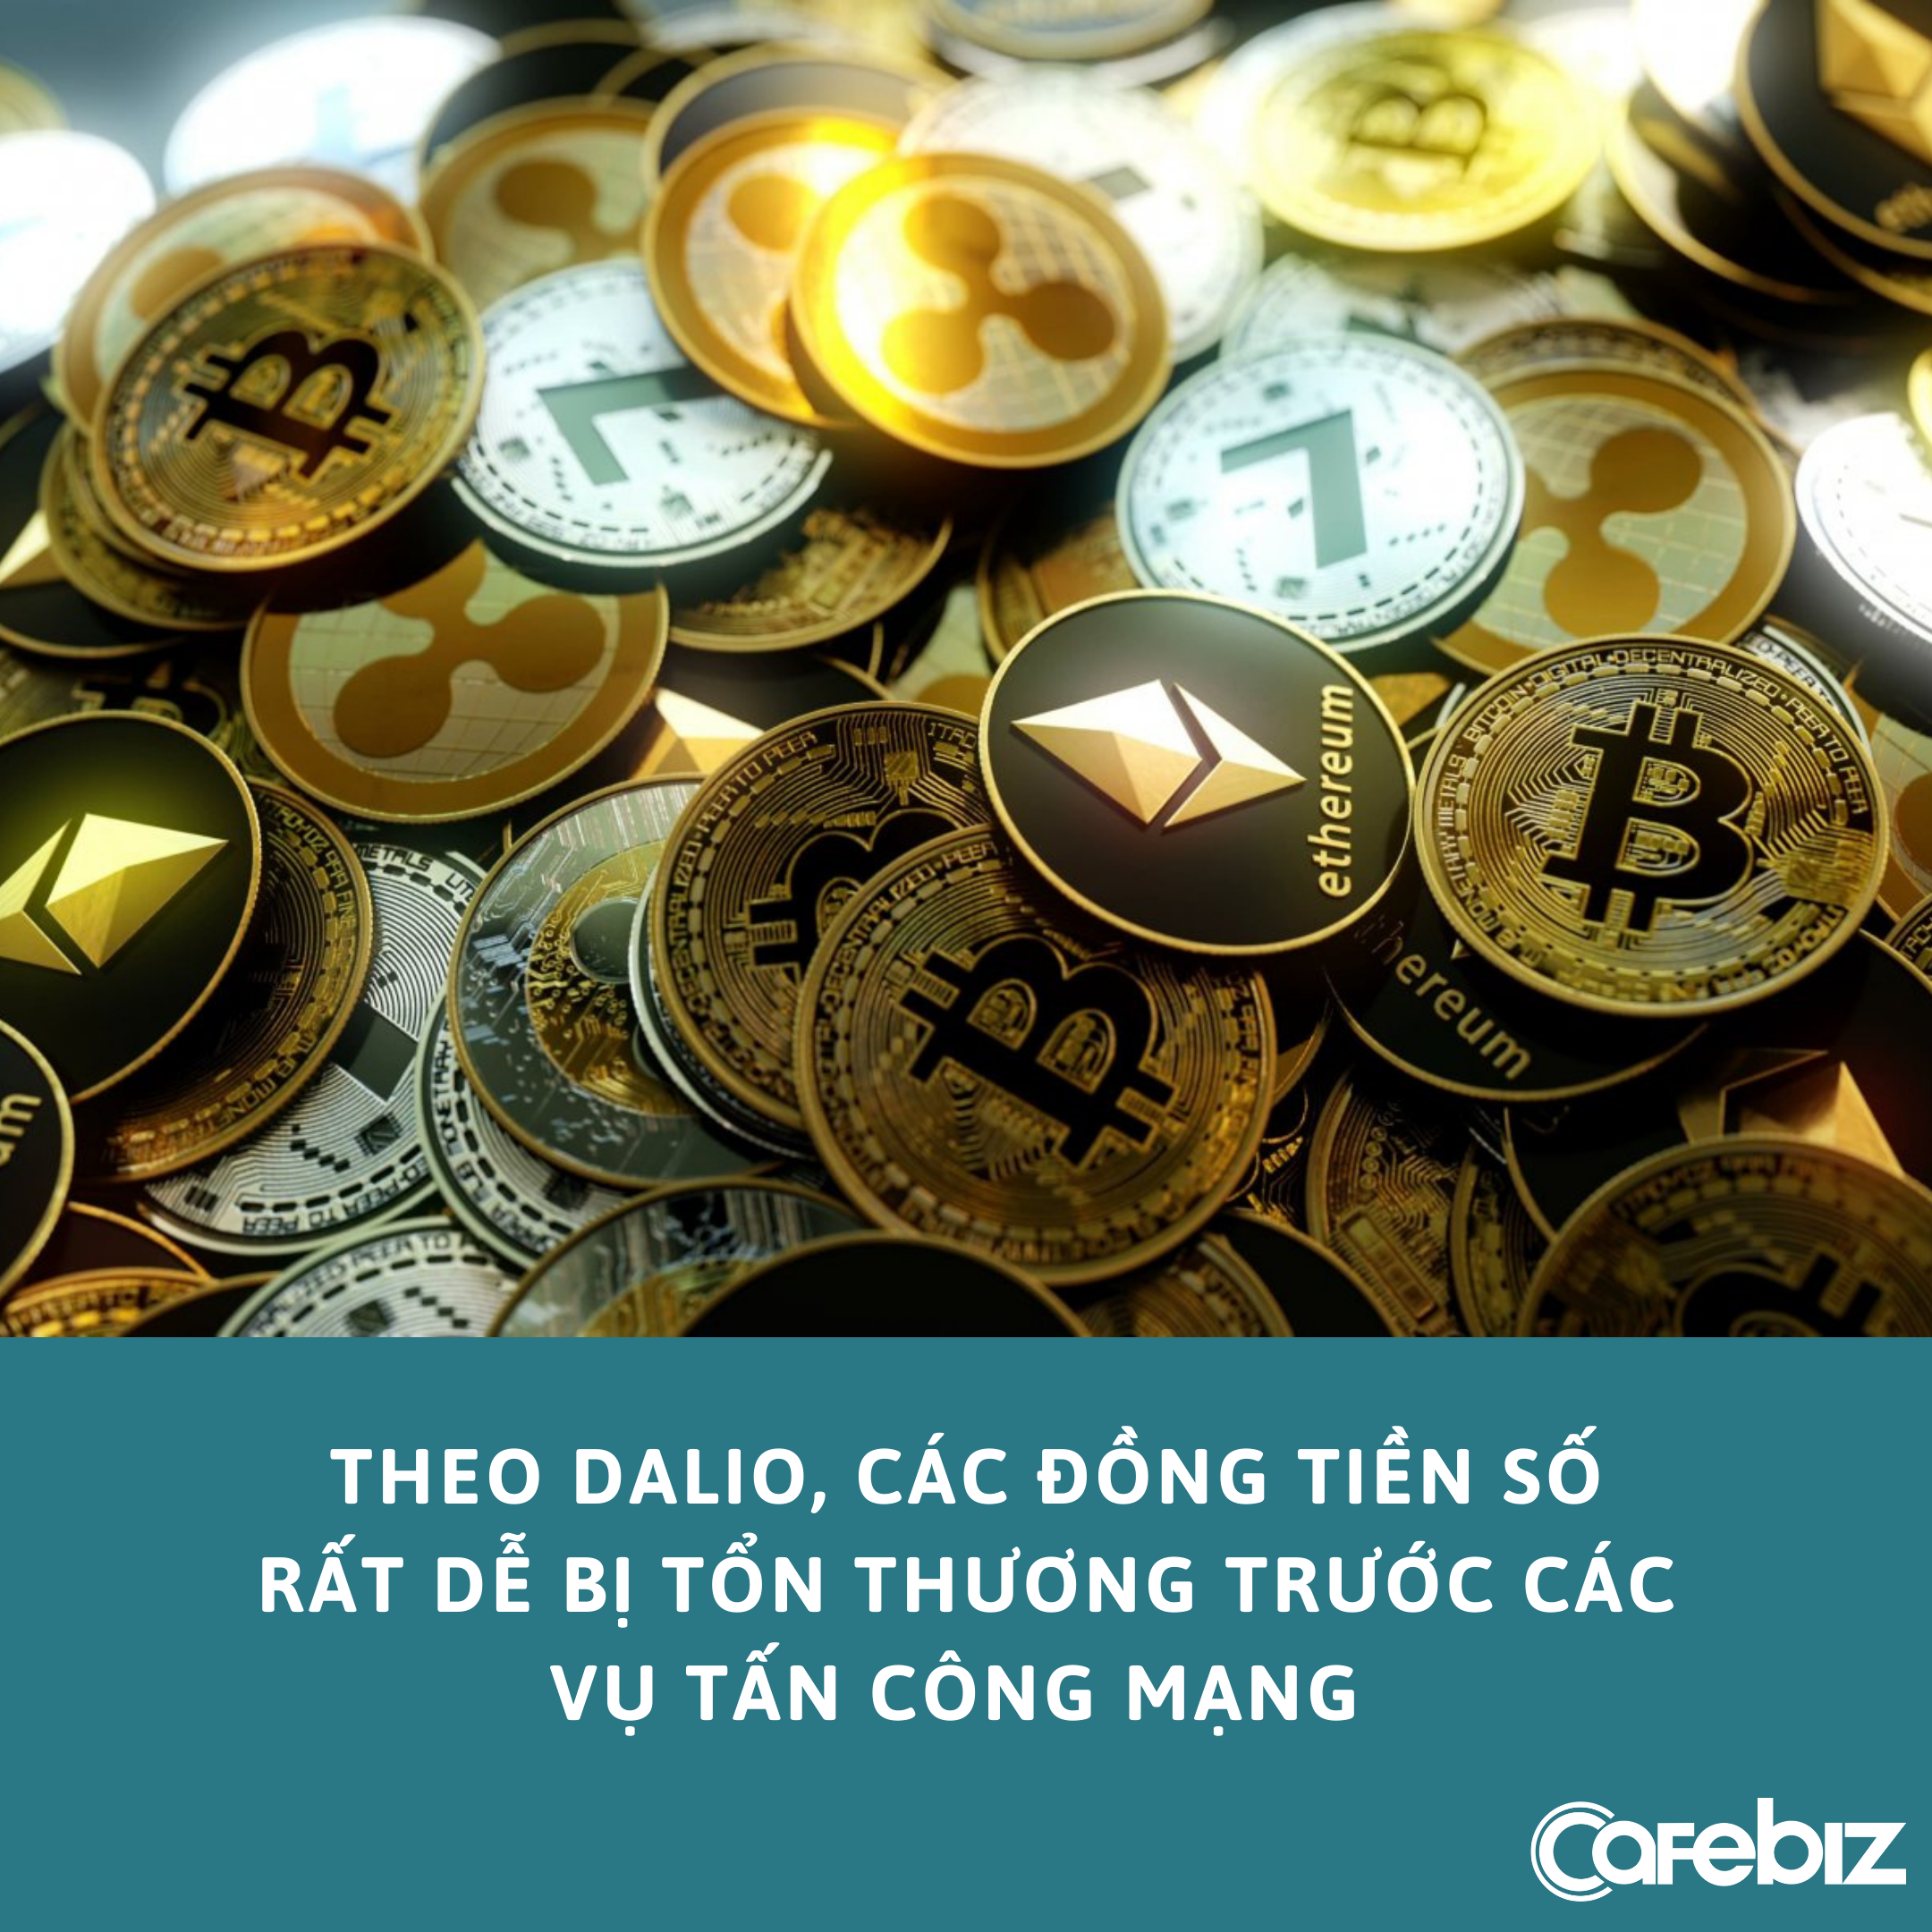 Tỷ phú Ray Dalio sở hữu một số Bitcoin, nhận xét rủi ro lớn nhất của đồng tiền số là ‘thành công của chính nó’ - Ảnh 2.